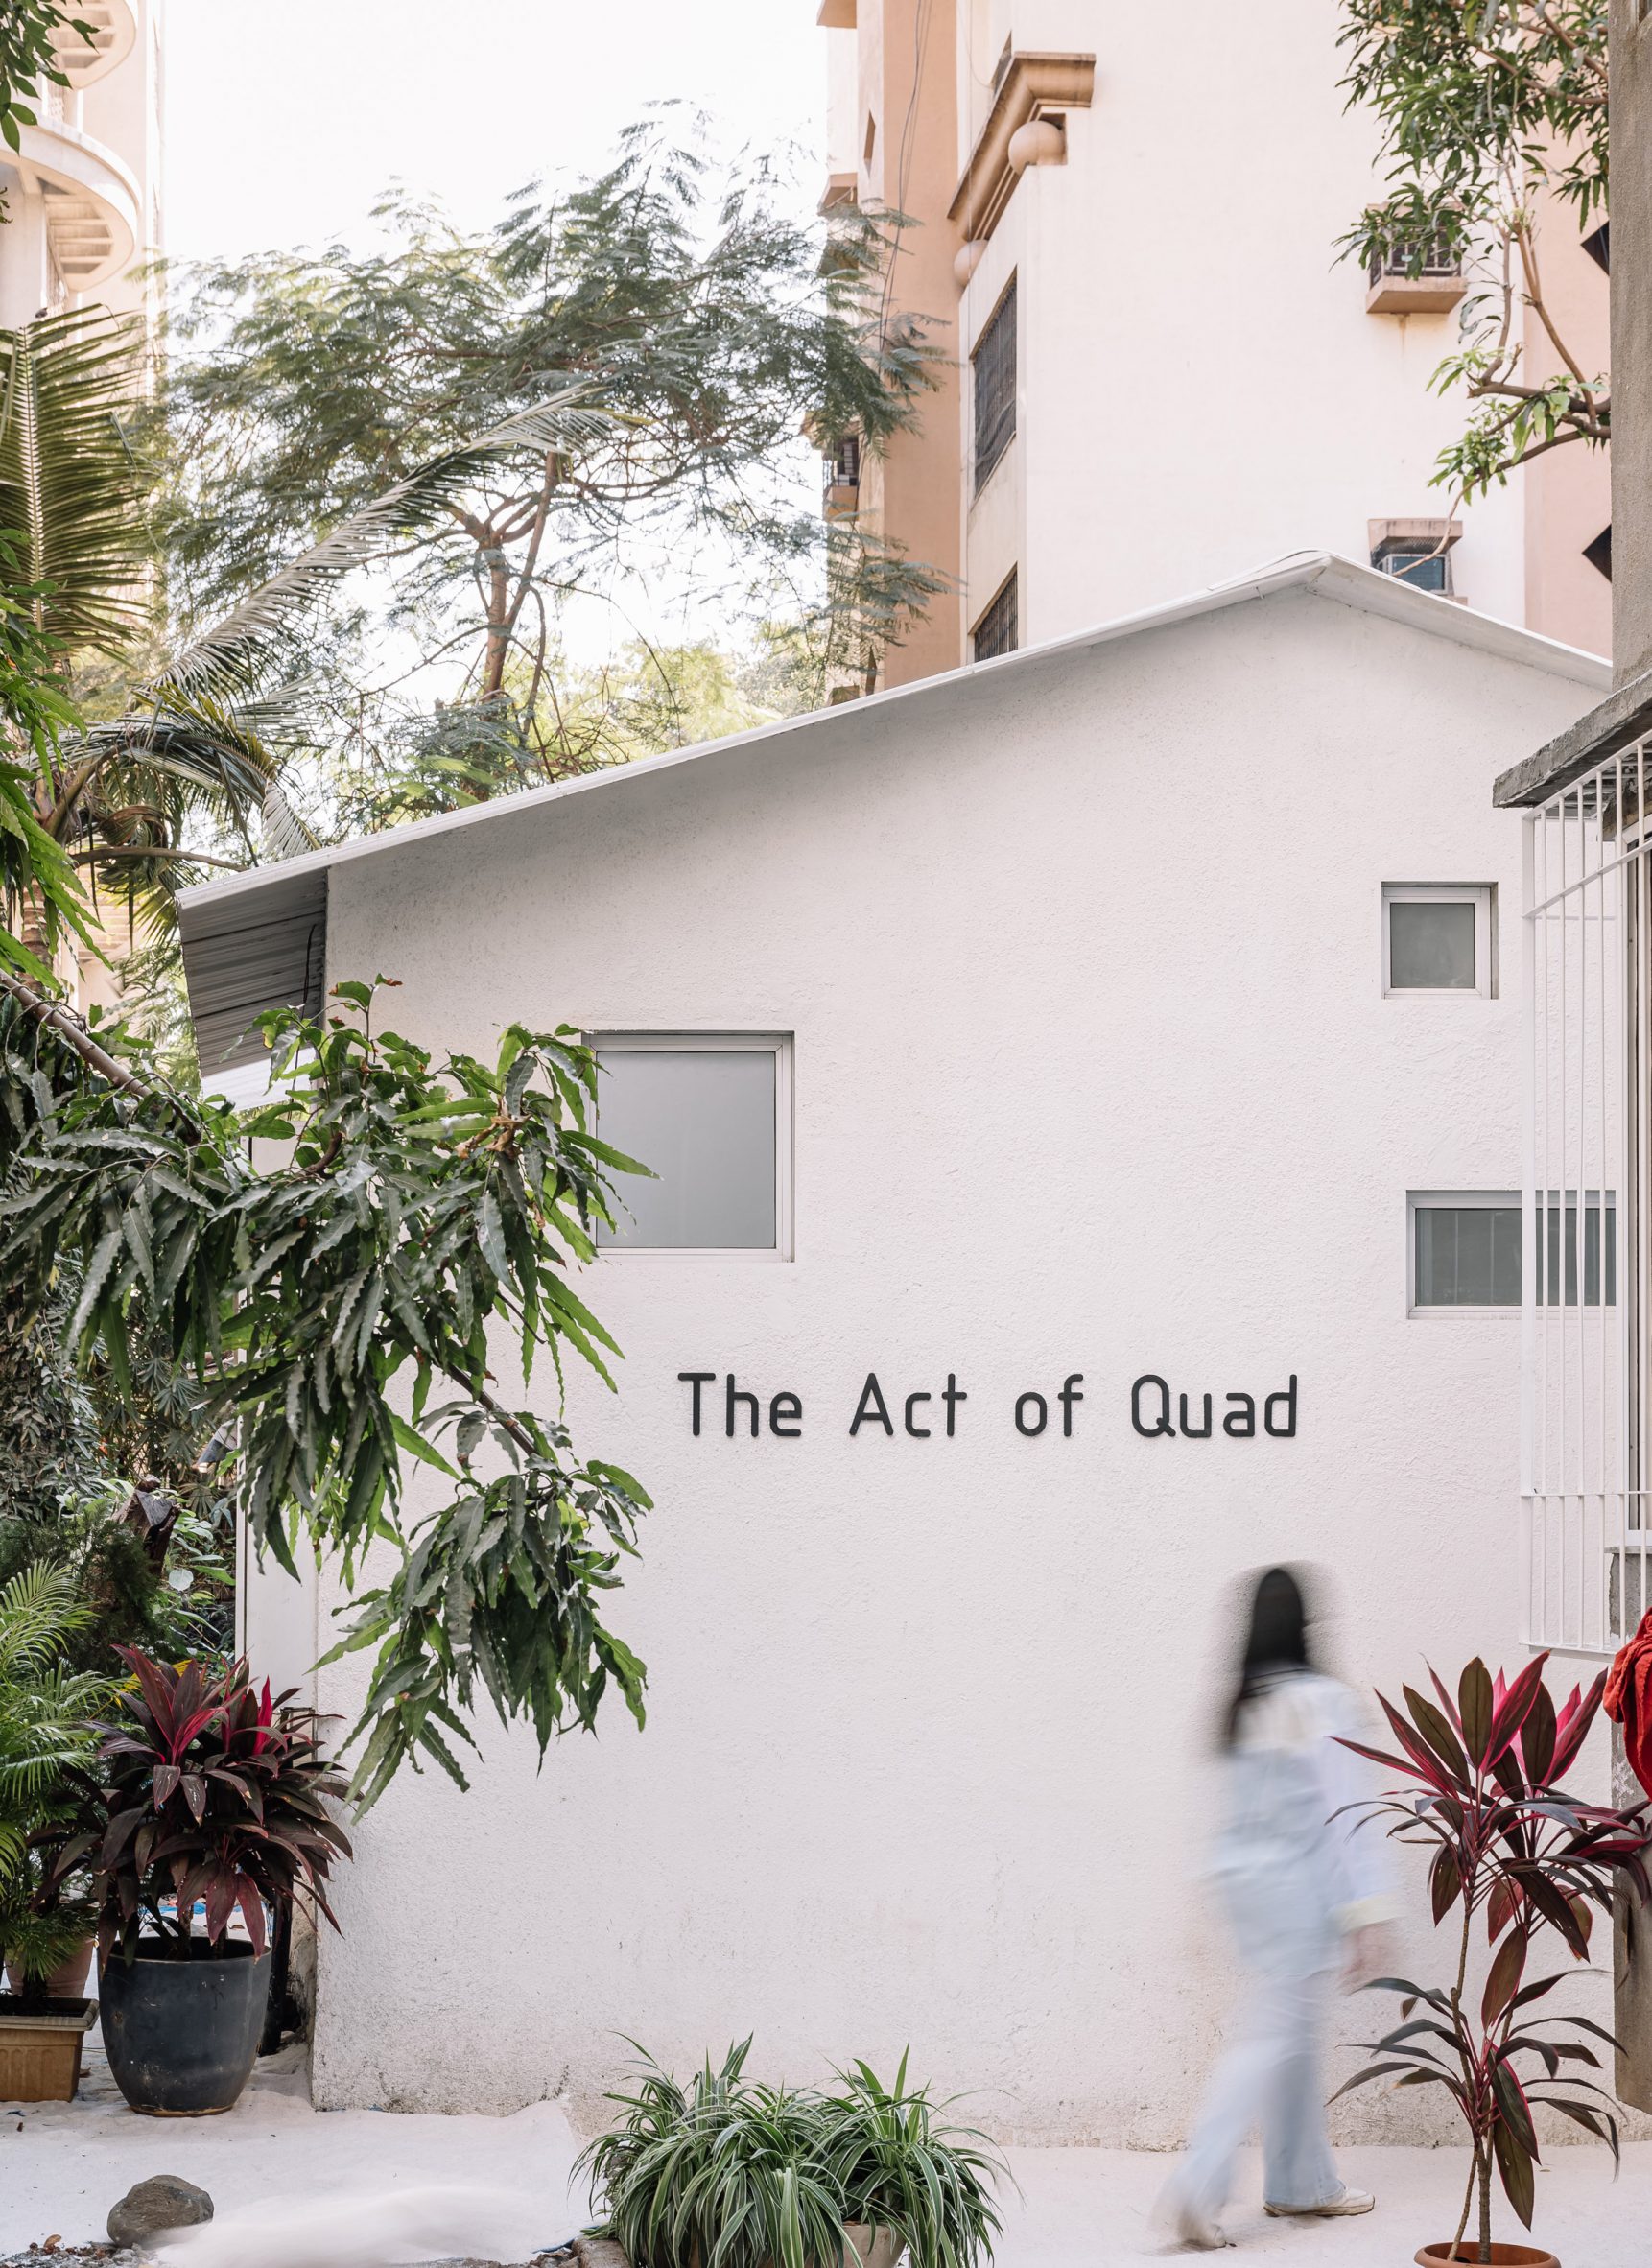 The Act of Quad studio in Mumbai